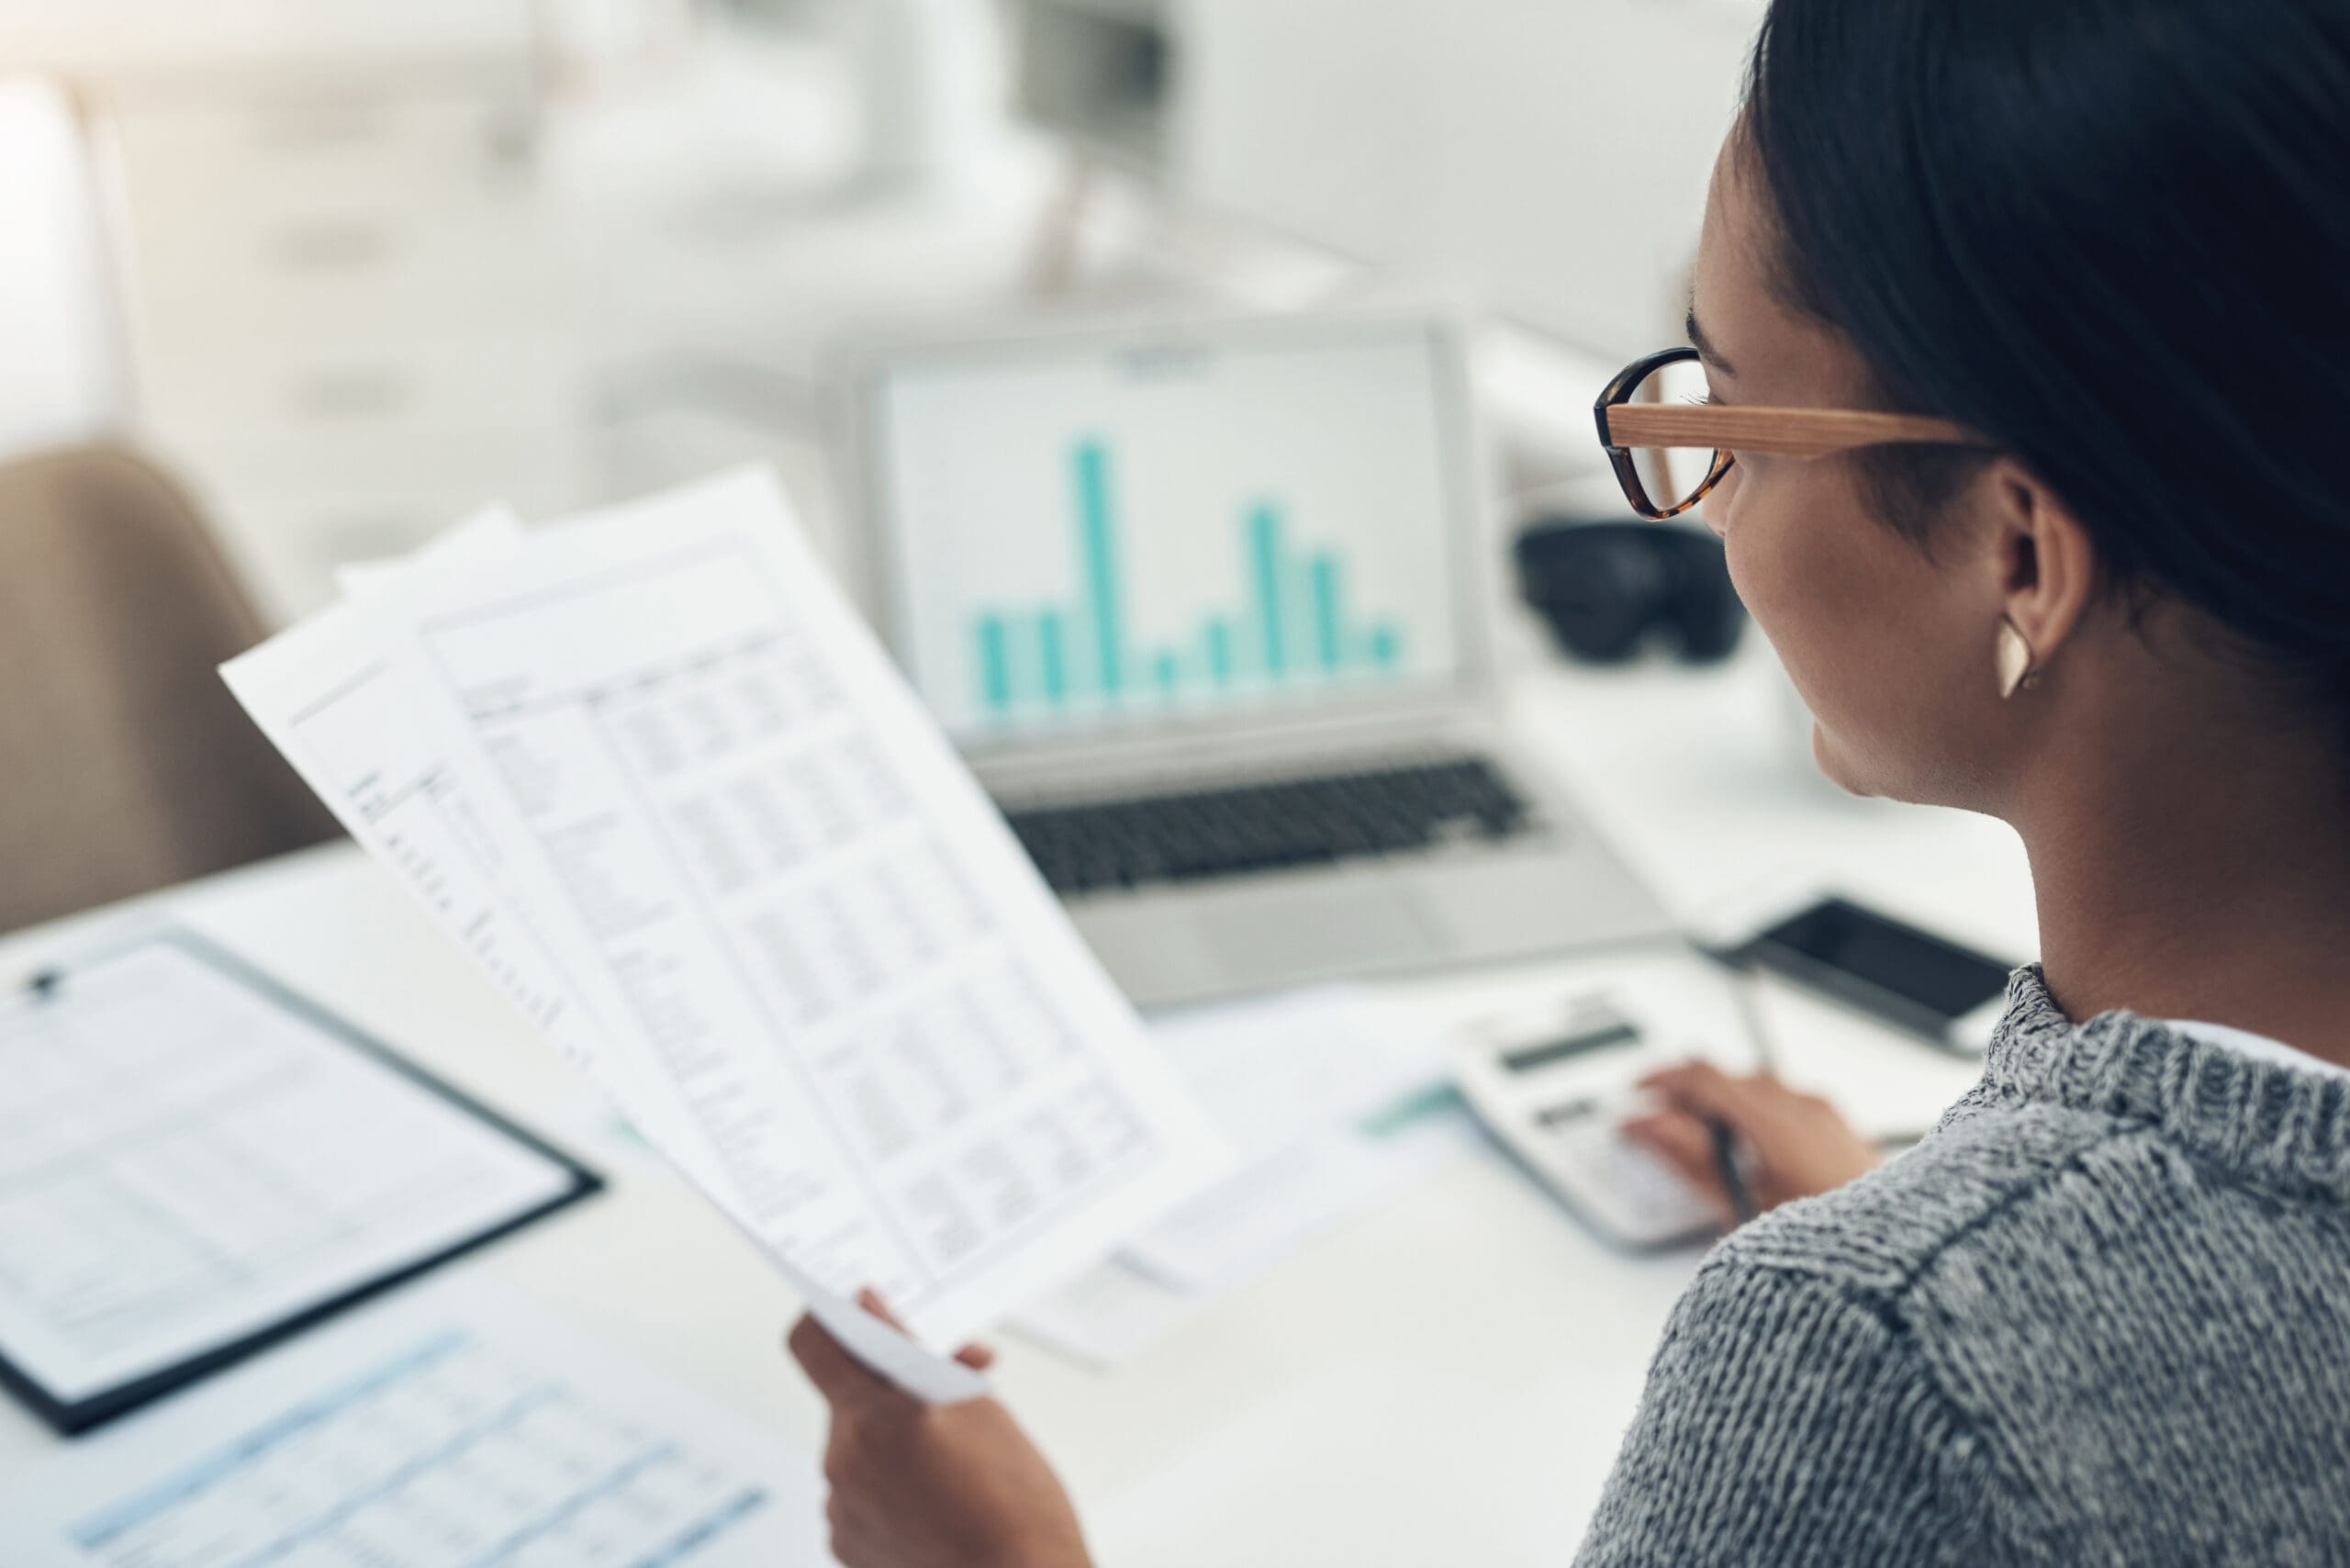 Closeup shot of an businesswoman calculating finances in an office